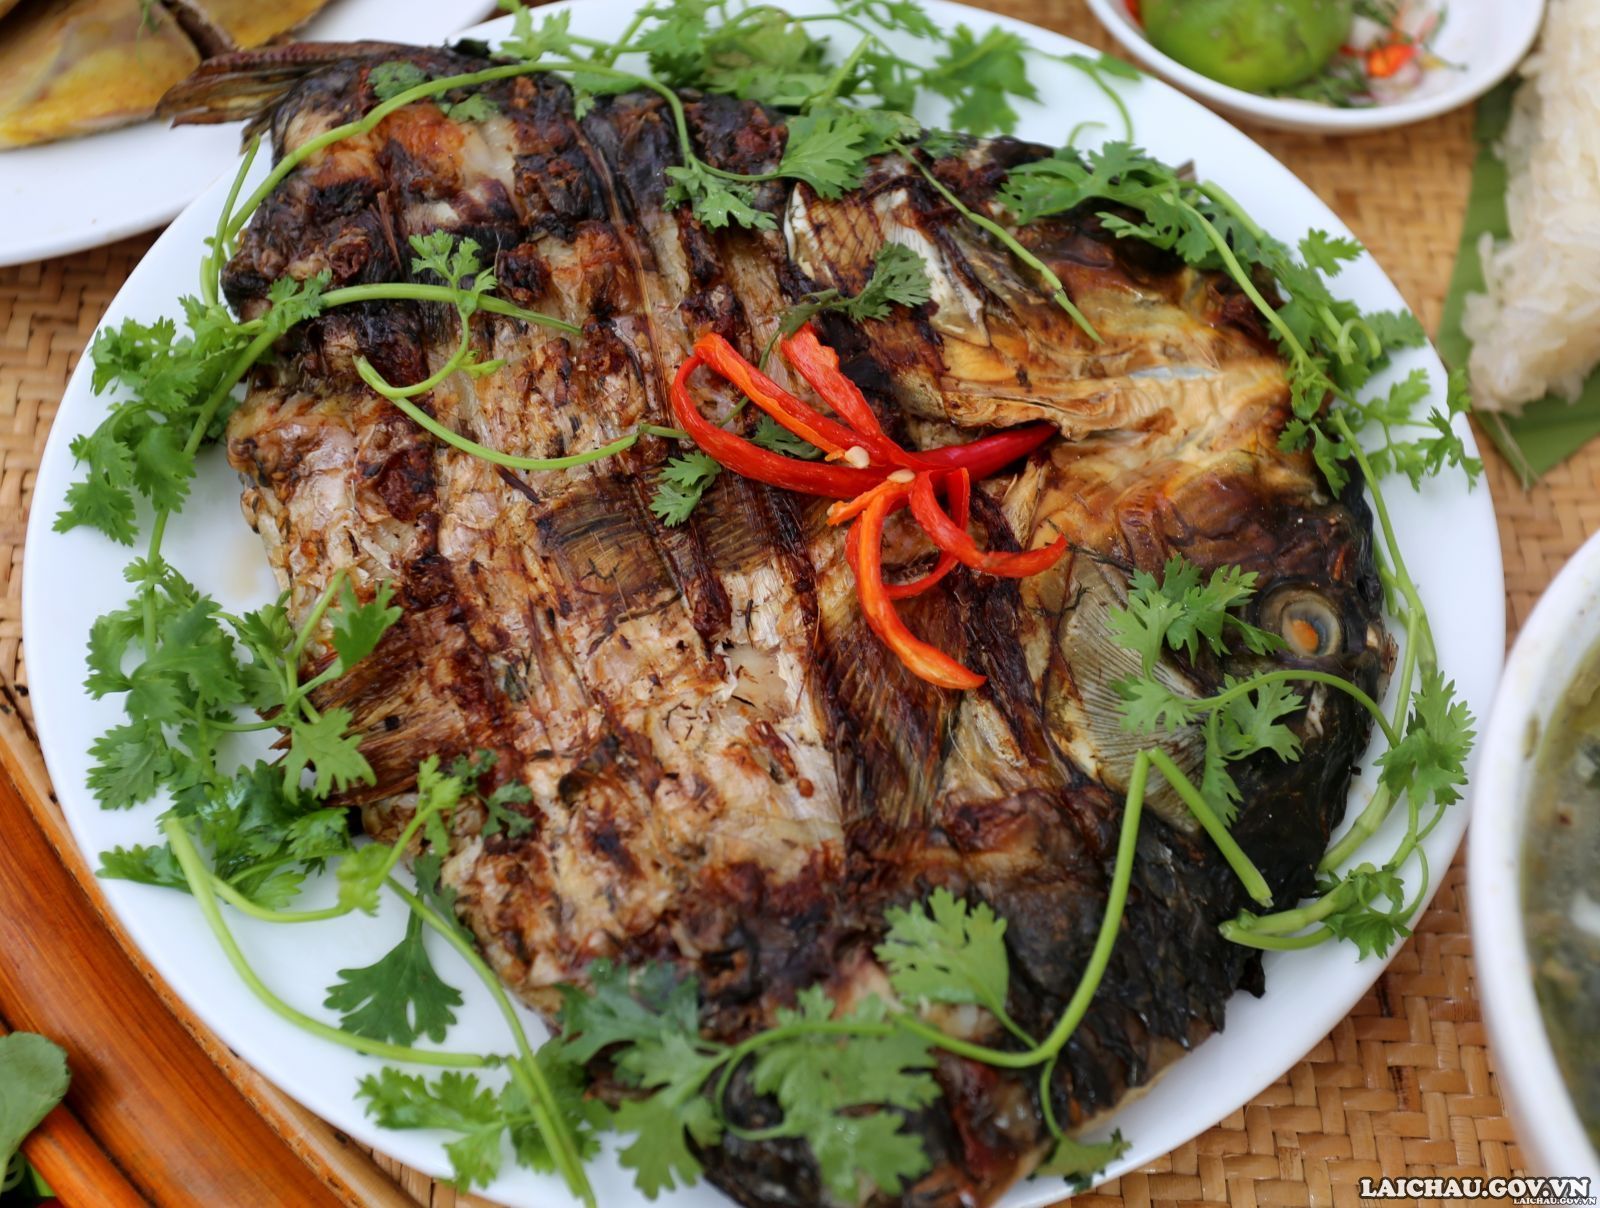 Cũng là món cá nướng, nhưng món cá nướng của người Thái Lai Châu hấp dẫn bởi cách tẩm ướp cầu kỳ với các loại gia vị đặc trưng. Ngoài những gia vị không thể thiếu trong quá trình tẩm ướp như muối, mì chính, bột canh thì món ăn này sử dụng các loại rau gia vị như hành củ, hành lá, rau húng, sả, ớt... và đặc biệt là phải có mắc khén.